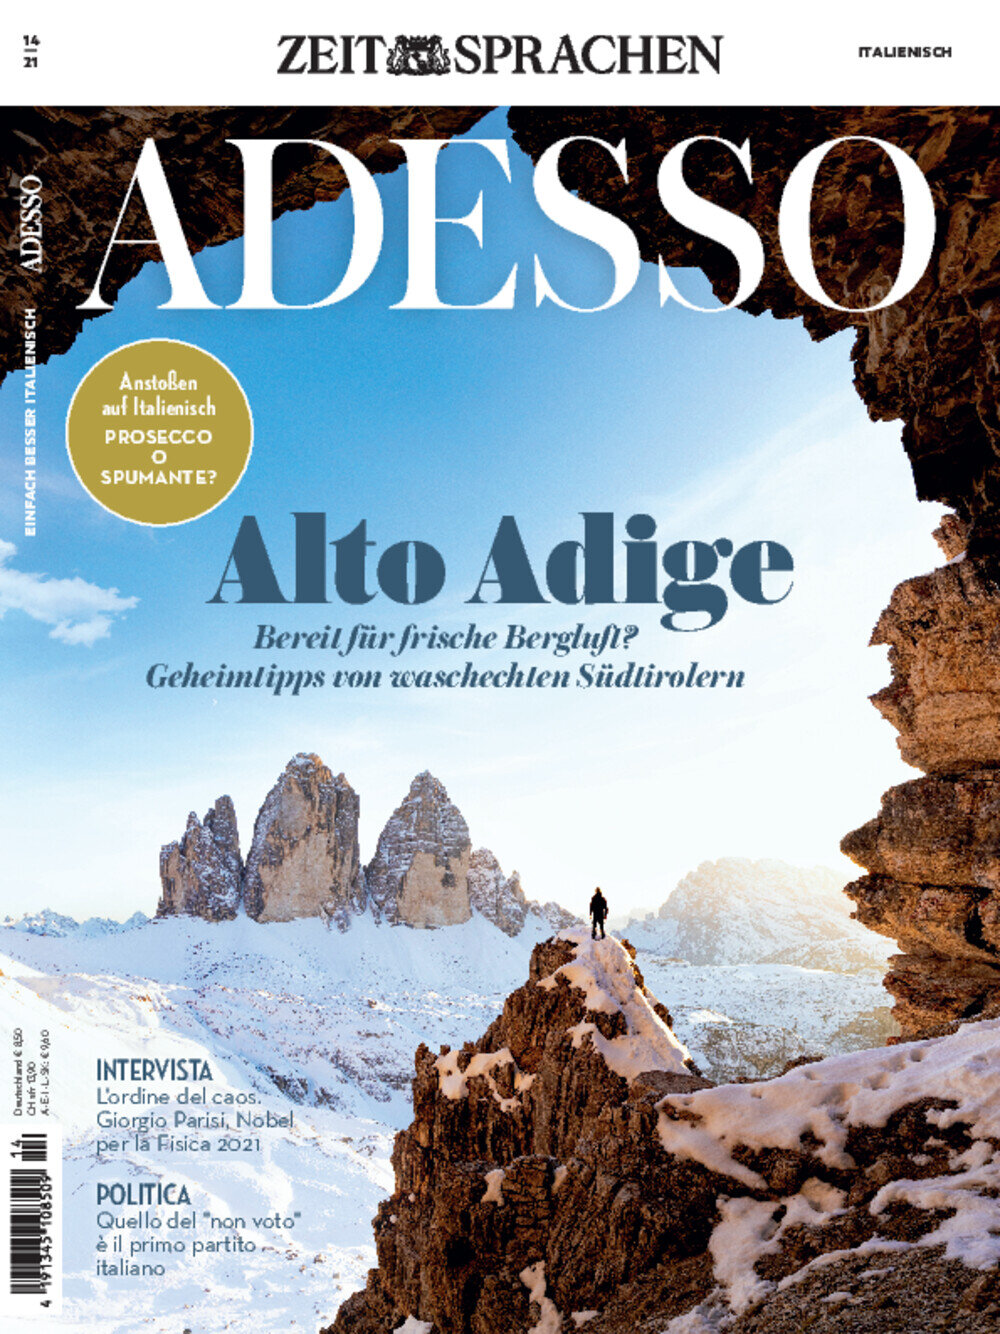 ADESSO eMagazine 14/2021